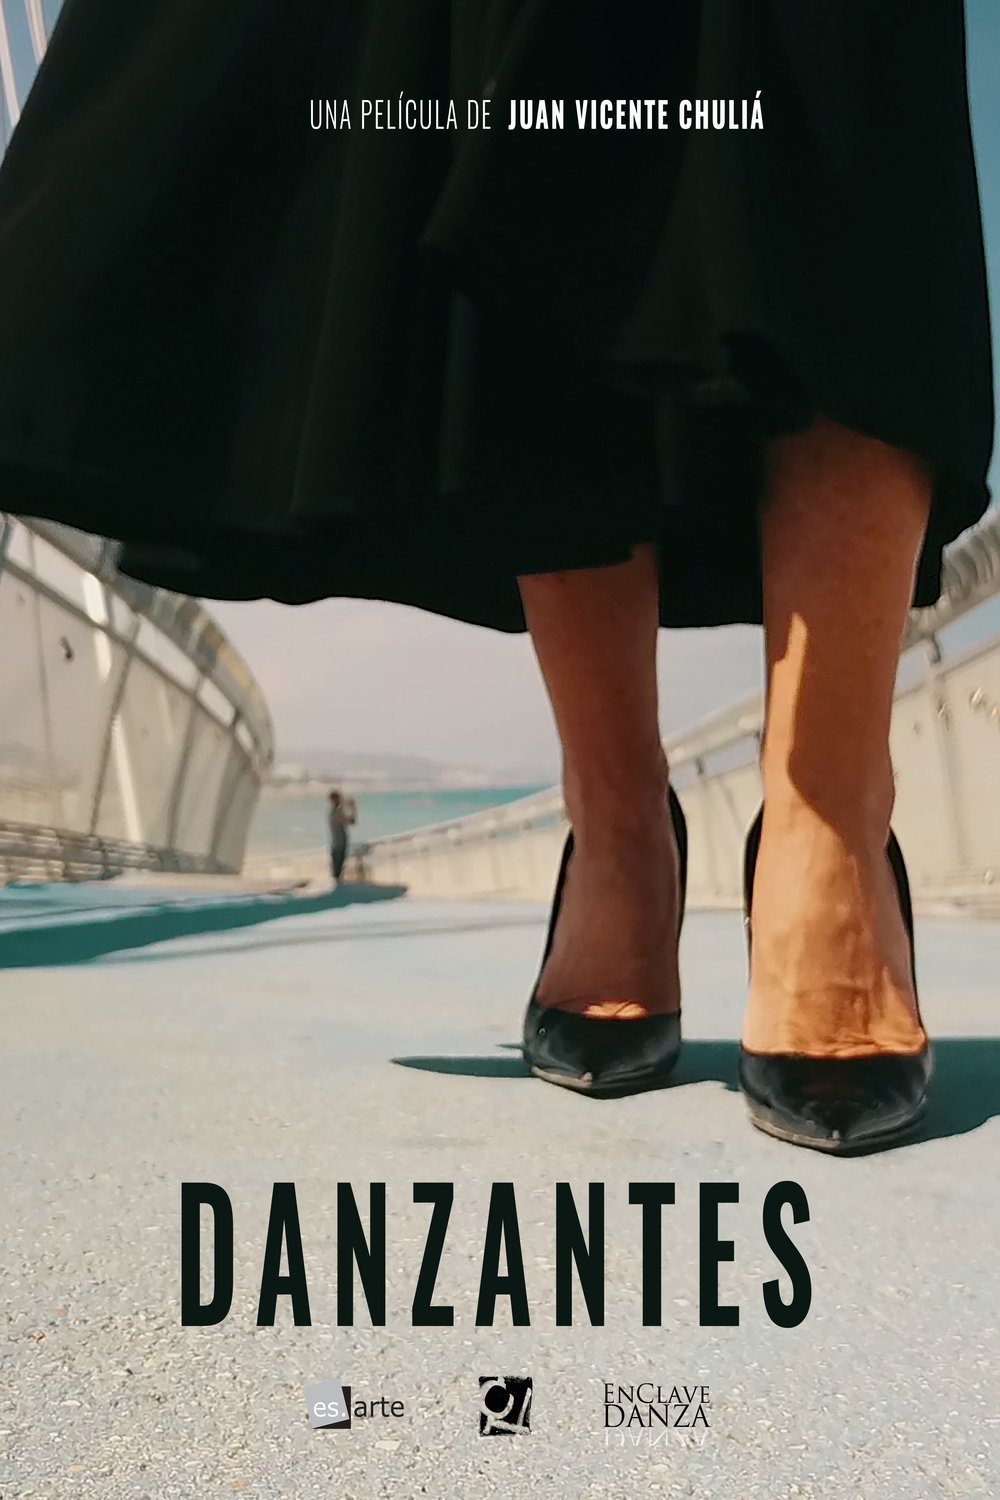 L'affiche originale du film Danzantes en espagnol